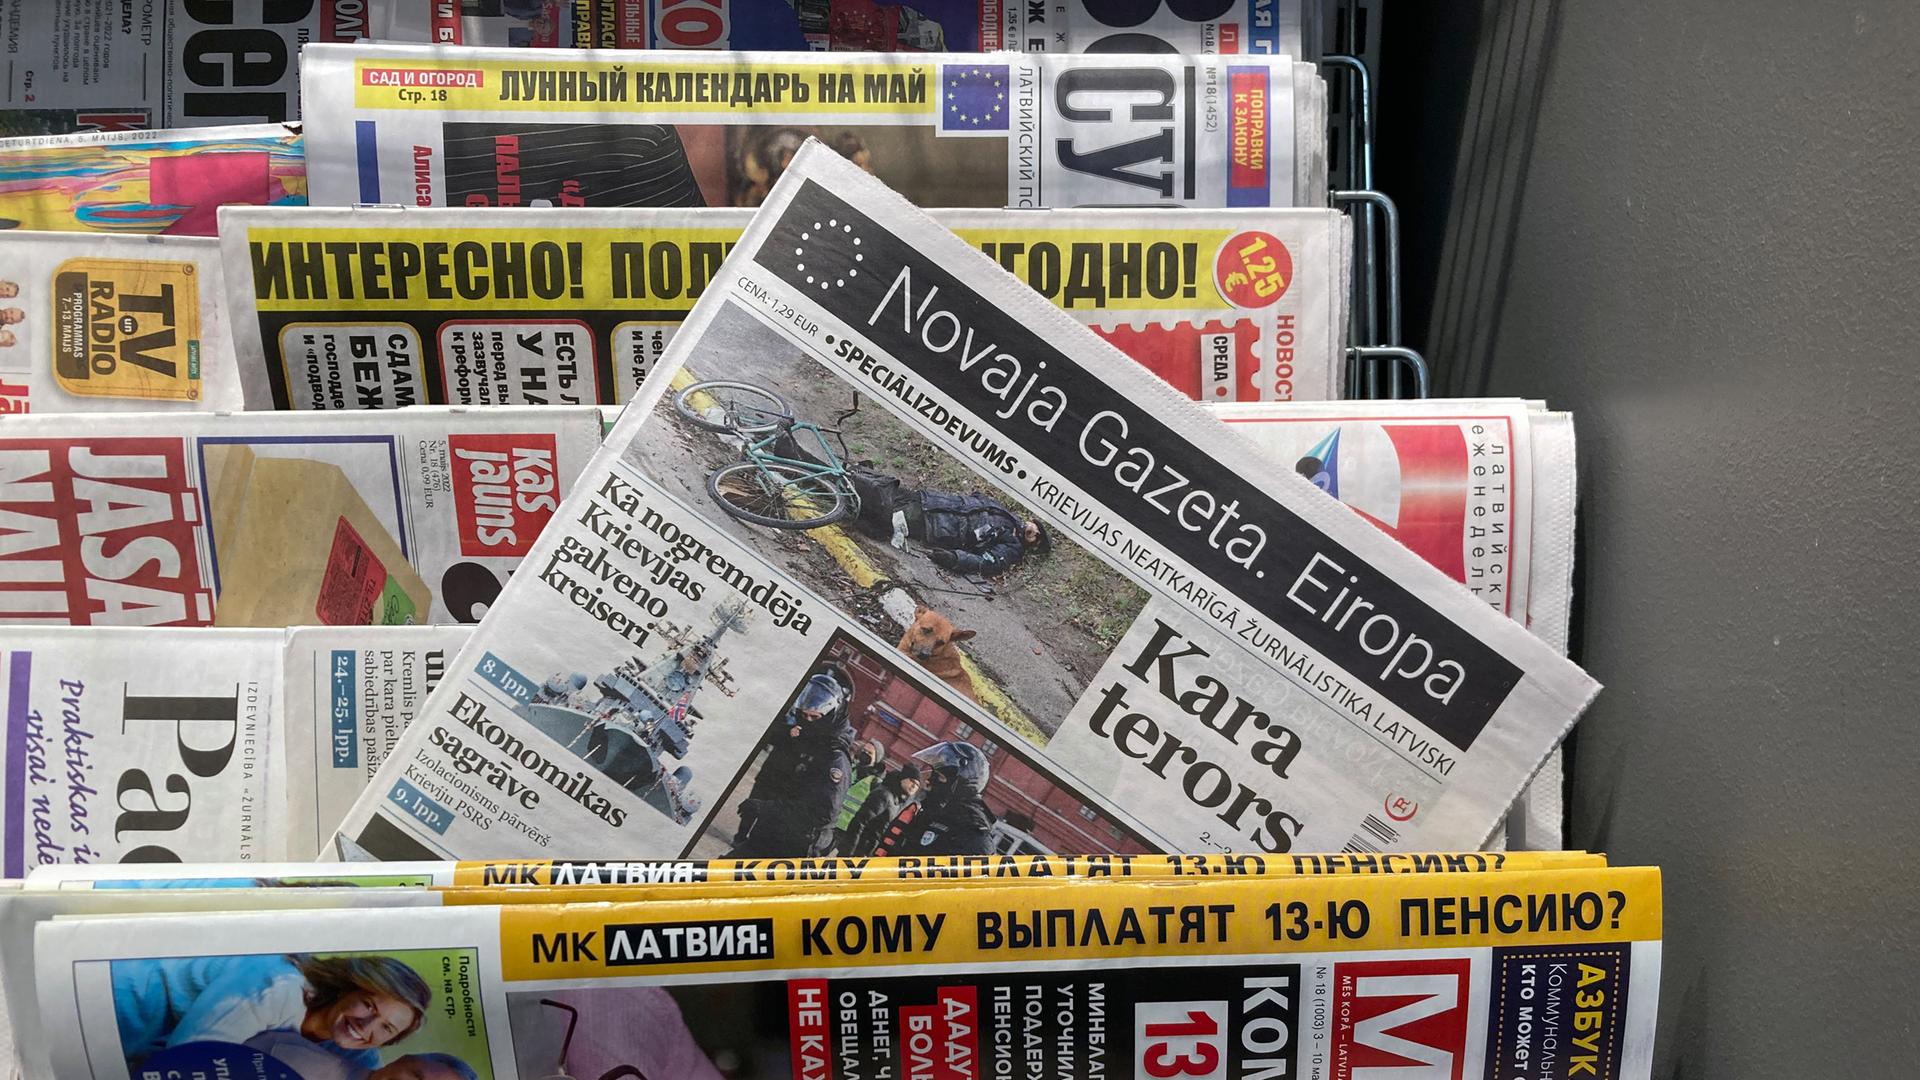 Eine lettische Printausgabe der "Nowaja Gaseta. Europa" steckt in einem Zeitungsstand.